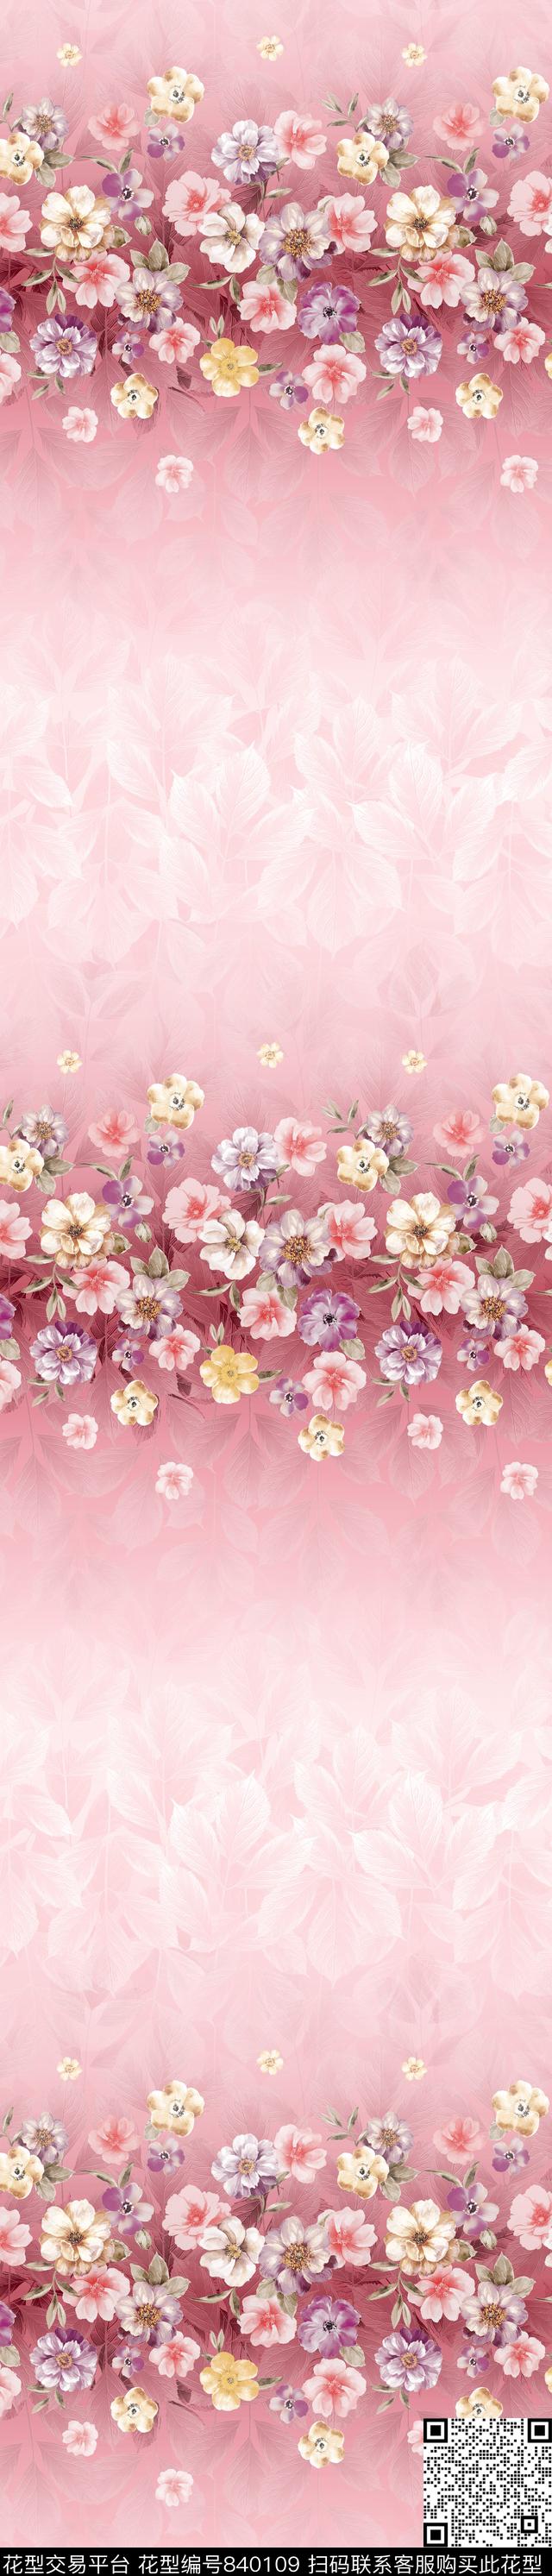 ch170427a.jpg - 840109 - 花朵 花卉 彩条 - 传统印花花型 － 窗帘花型设计 － 瓦栏